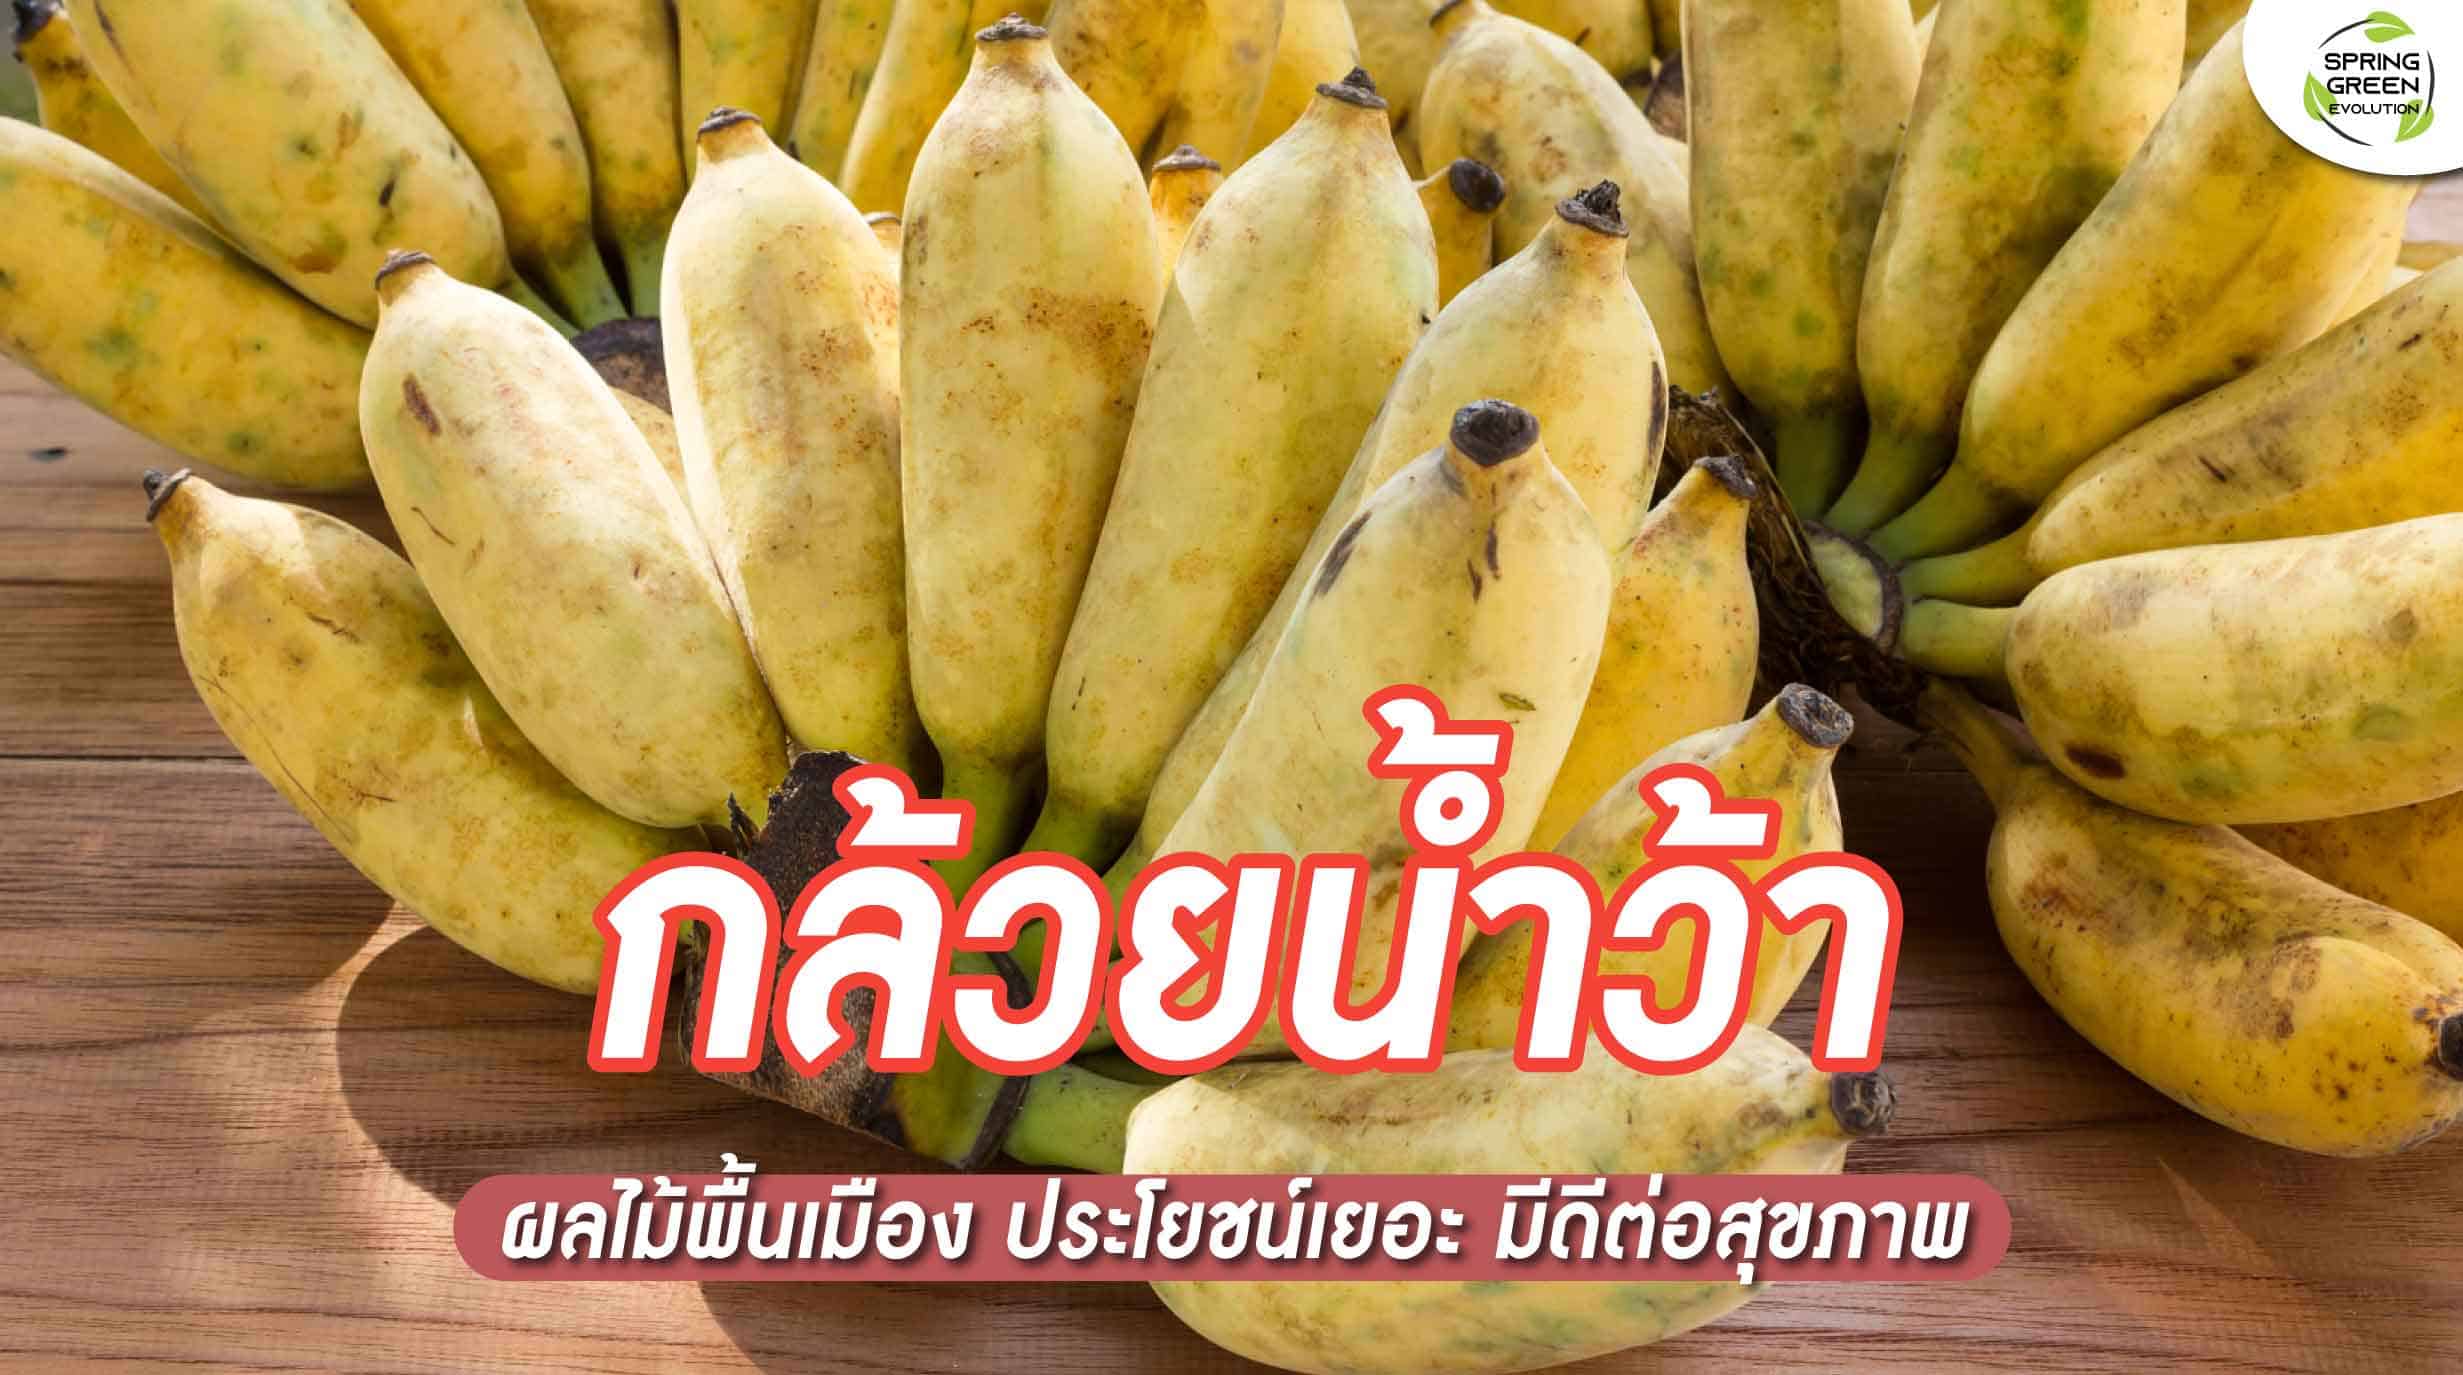 220722-Content-กล้วยน้ำว้า-ผลไม้ไทย-01